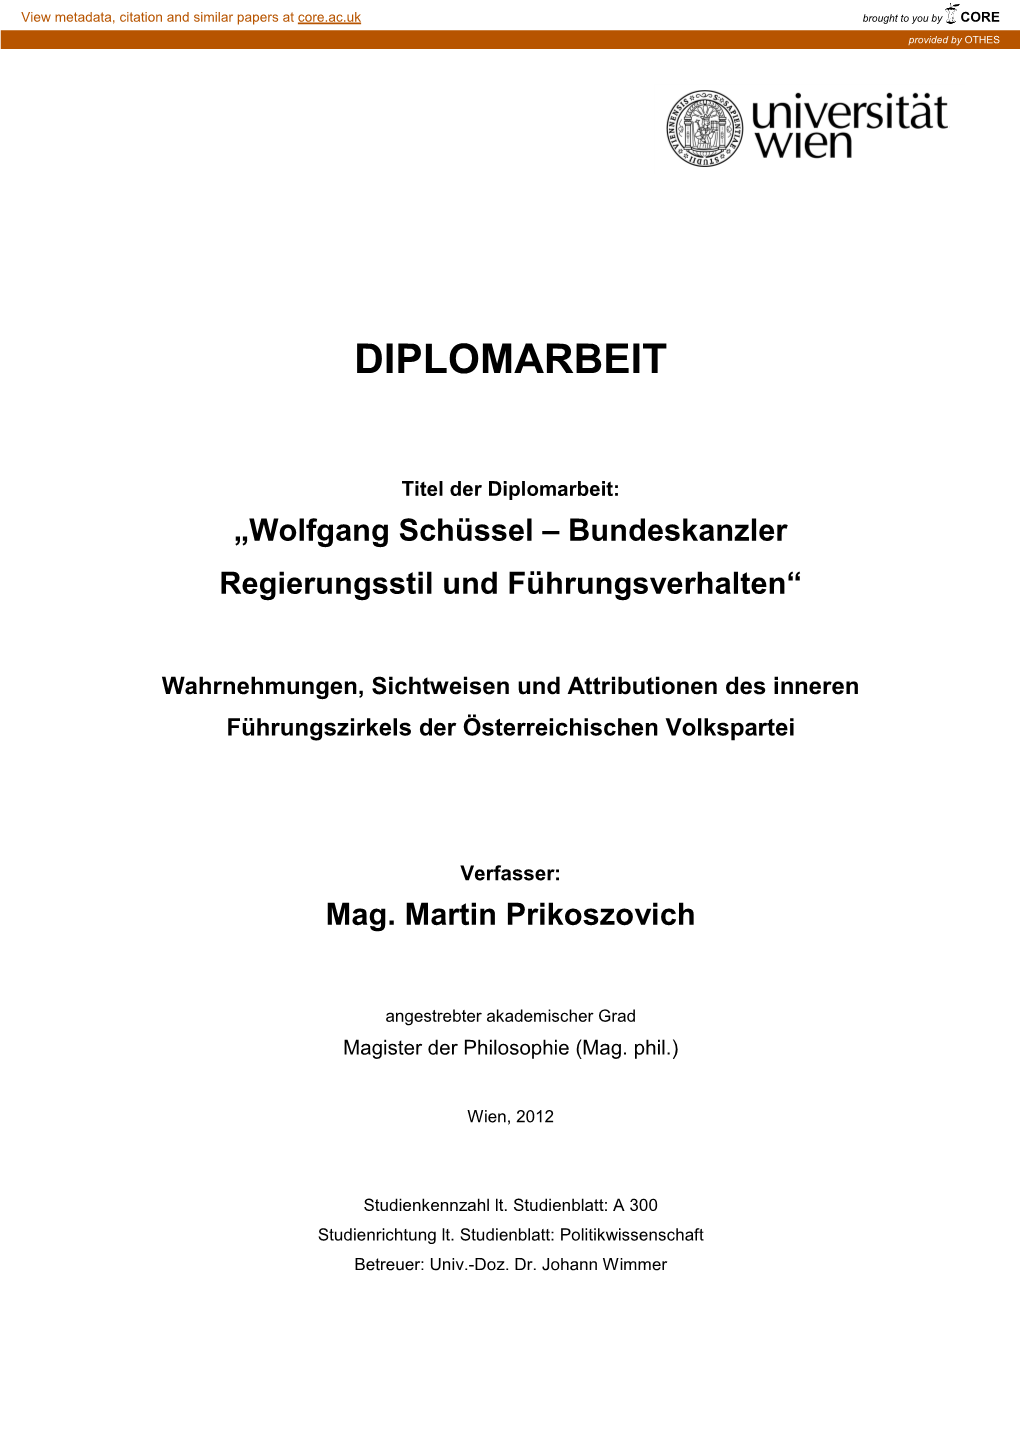 Wolfgang Schüssel – Bundeskanzler Regierungsstil Und Führungsverhalten“